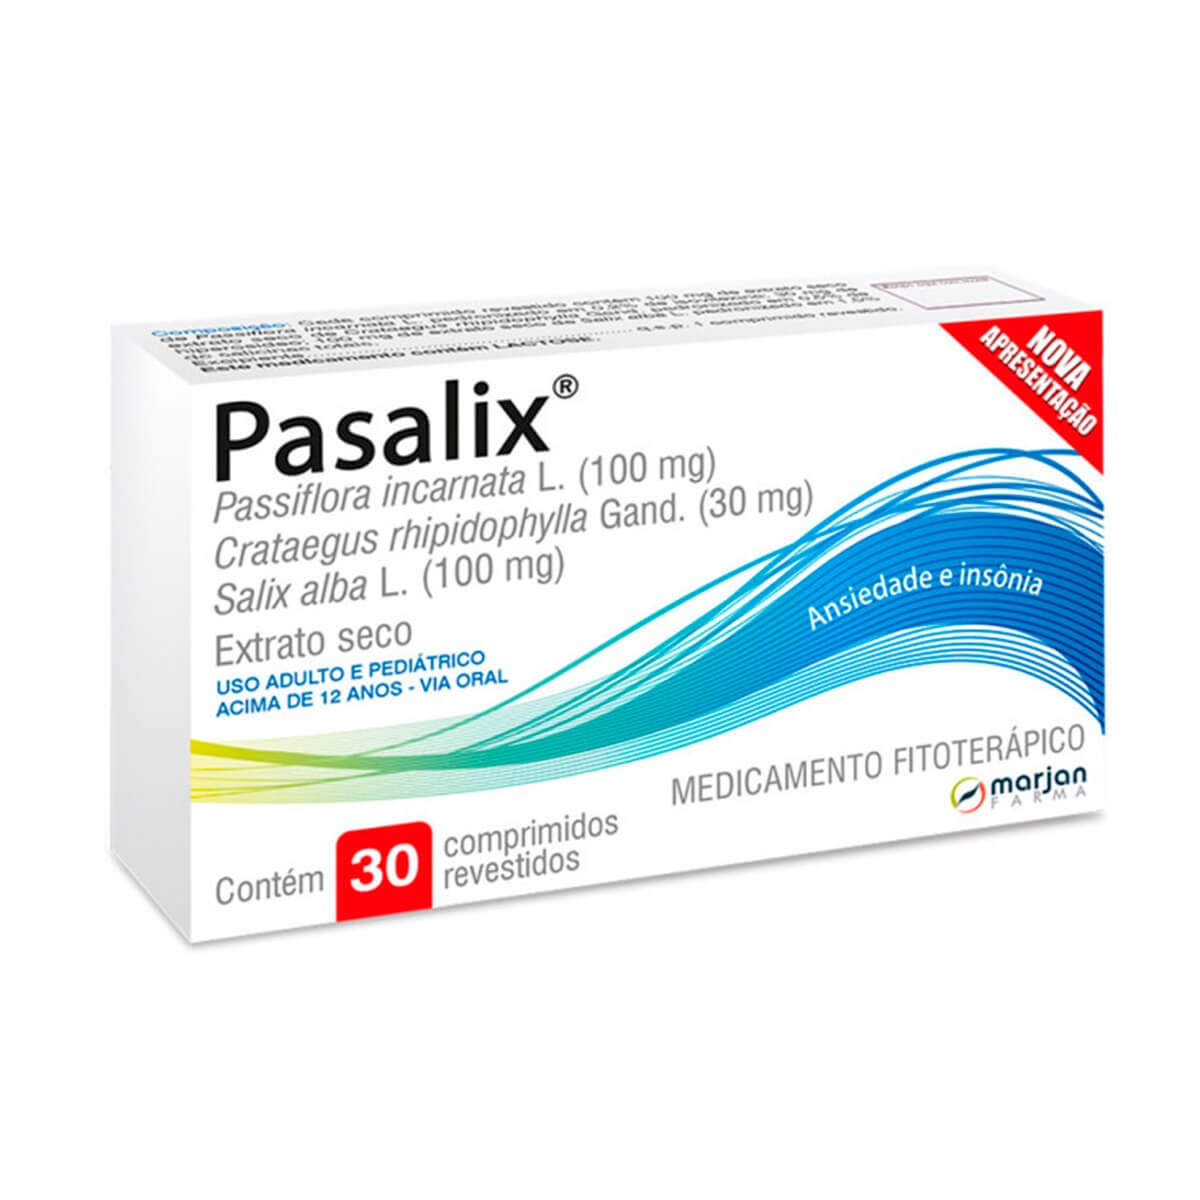 Pasalix Passiflora Incarnata 100mg 30 comprimidos